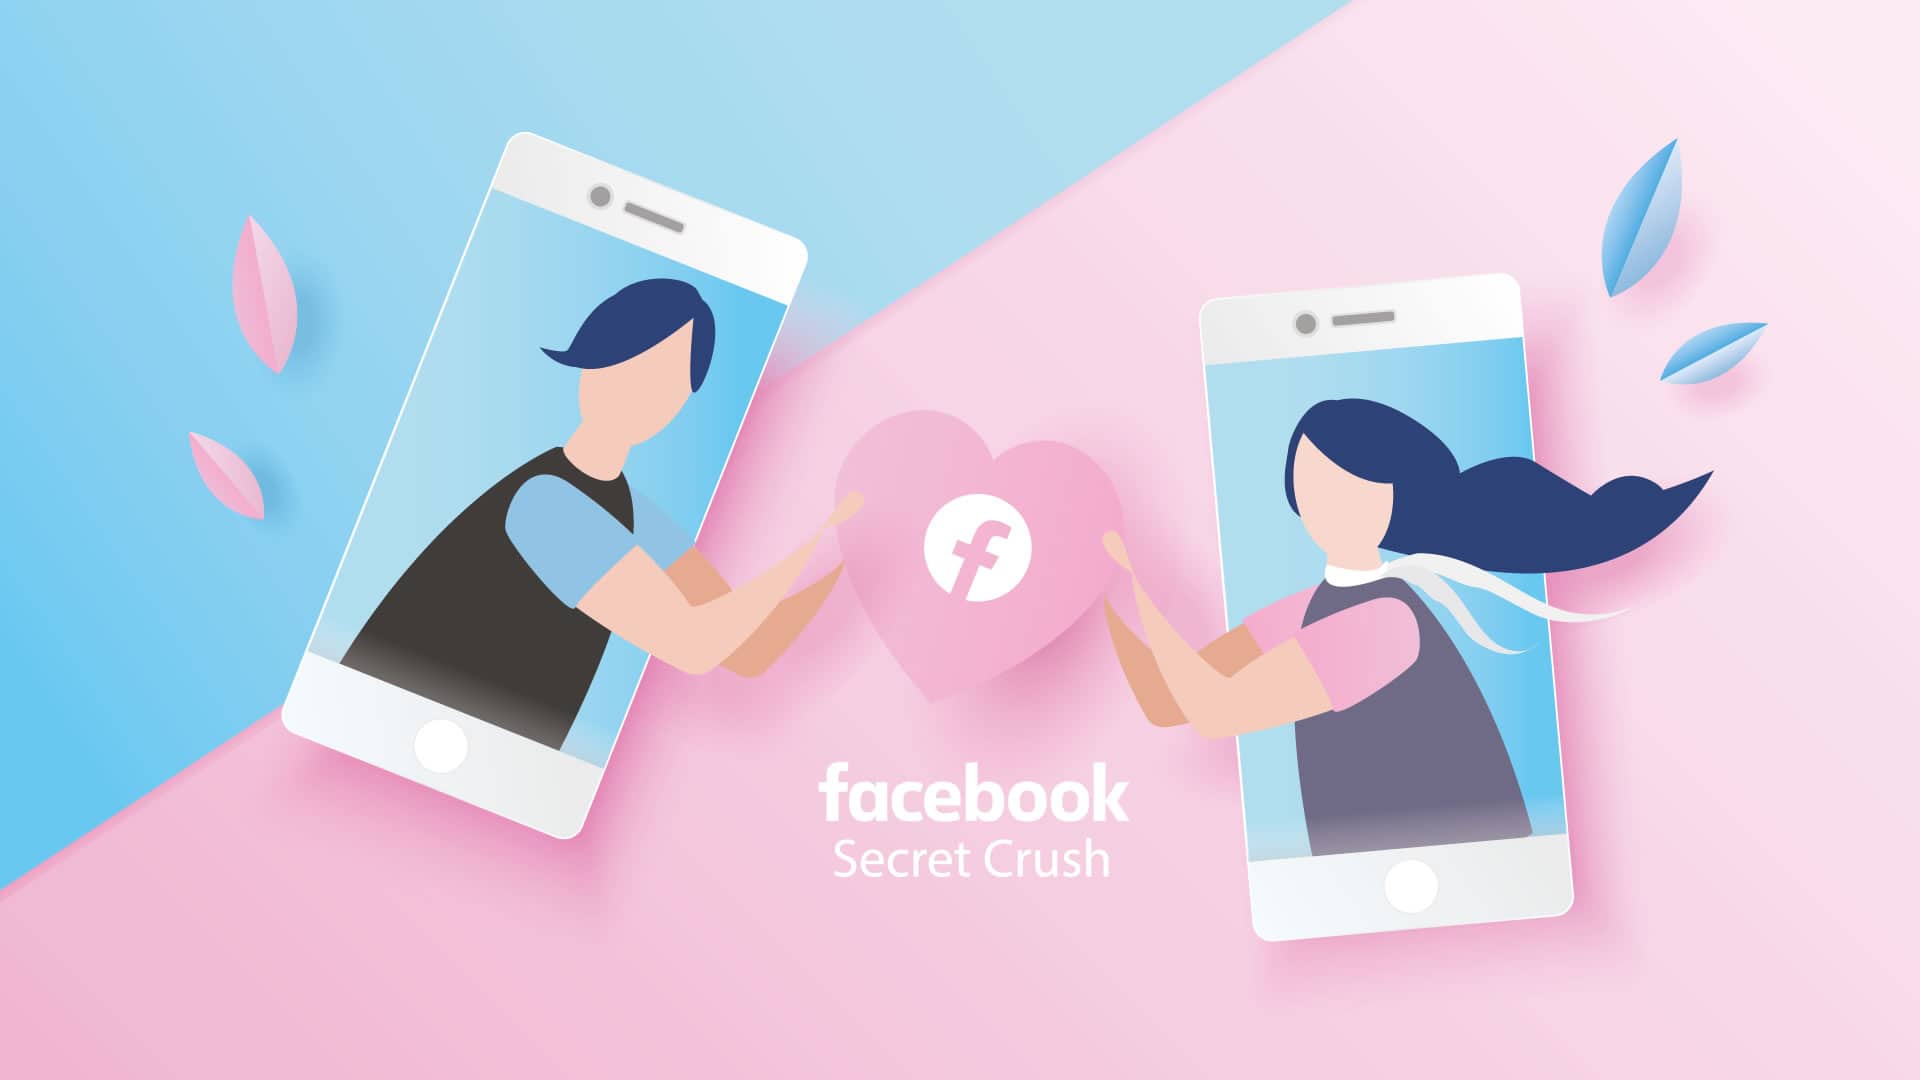 Facebook lanza Secret Crush, la app para encontrar pareja